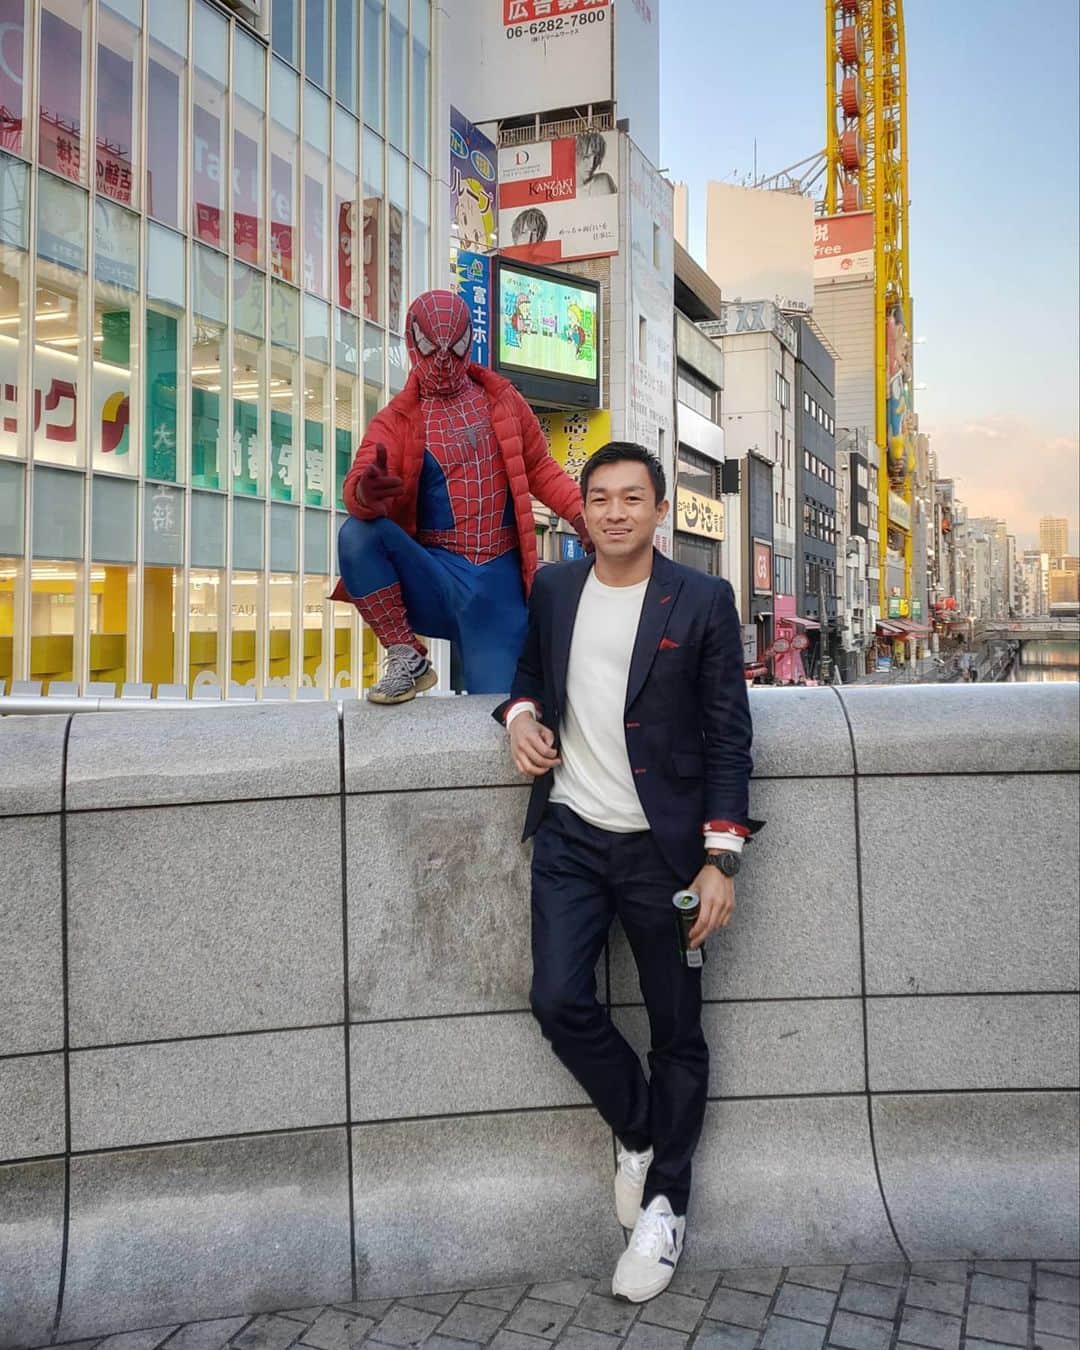 Japanese Spidermanのインスタグラム：「⚠⚠⚠⚠難波のスパイダーマン⚠⚠⚠⚠ ・ 自分が考えているヒーローの定義として、﻿ ﻿ 報酬💸を貰わないということがある。﻿ ﻿ 今まで色んなところにお呼びいただき交通費を含め報酬をいただいたことはない。﻿ ﻿ もしスパイダーマン🕷🕸が実在したら、﻿ 彼はけして人助けの見返りに報酬を貰わないだろうし、﻿ ﻿ 何より、その姿を子供たちが見たら一気に夢を壊す。﻿ ﻿ スーツを着れば誰でもチヤホヤされるし、お金も稼げるだろうが、そのスーツには子供たちの夢が詰まっていることを自覚してほしい。﻿ ﻿ #週末ヒーロー﻿ #スパイダーマン#アベンジャーズ#マーベル#ユニバ#usj#ヒーロー#心斎橋#なんば#道頓堀#子供#蜘蛛#marvel#spiderman#avengers#hero#cos#cosplay#コスプレ﻿#出張#デニムスーツ#広告 #スーツ男子 ﻿ ﻿」